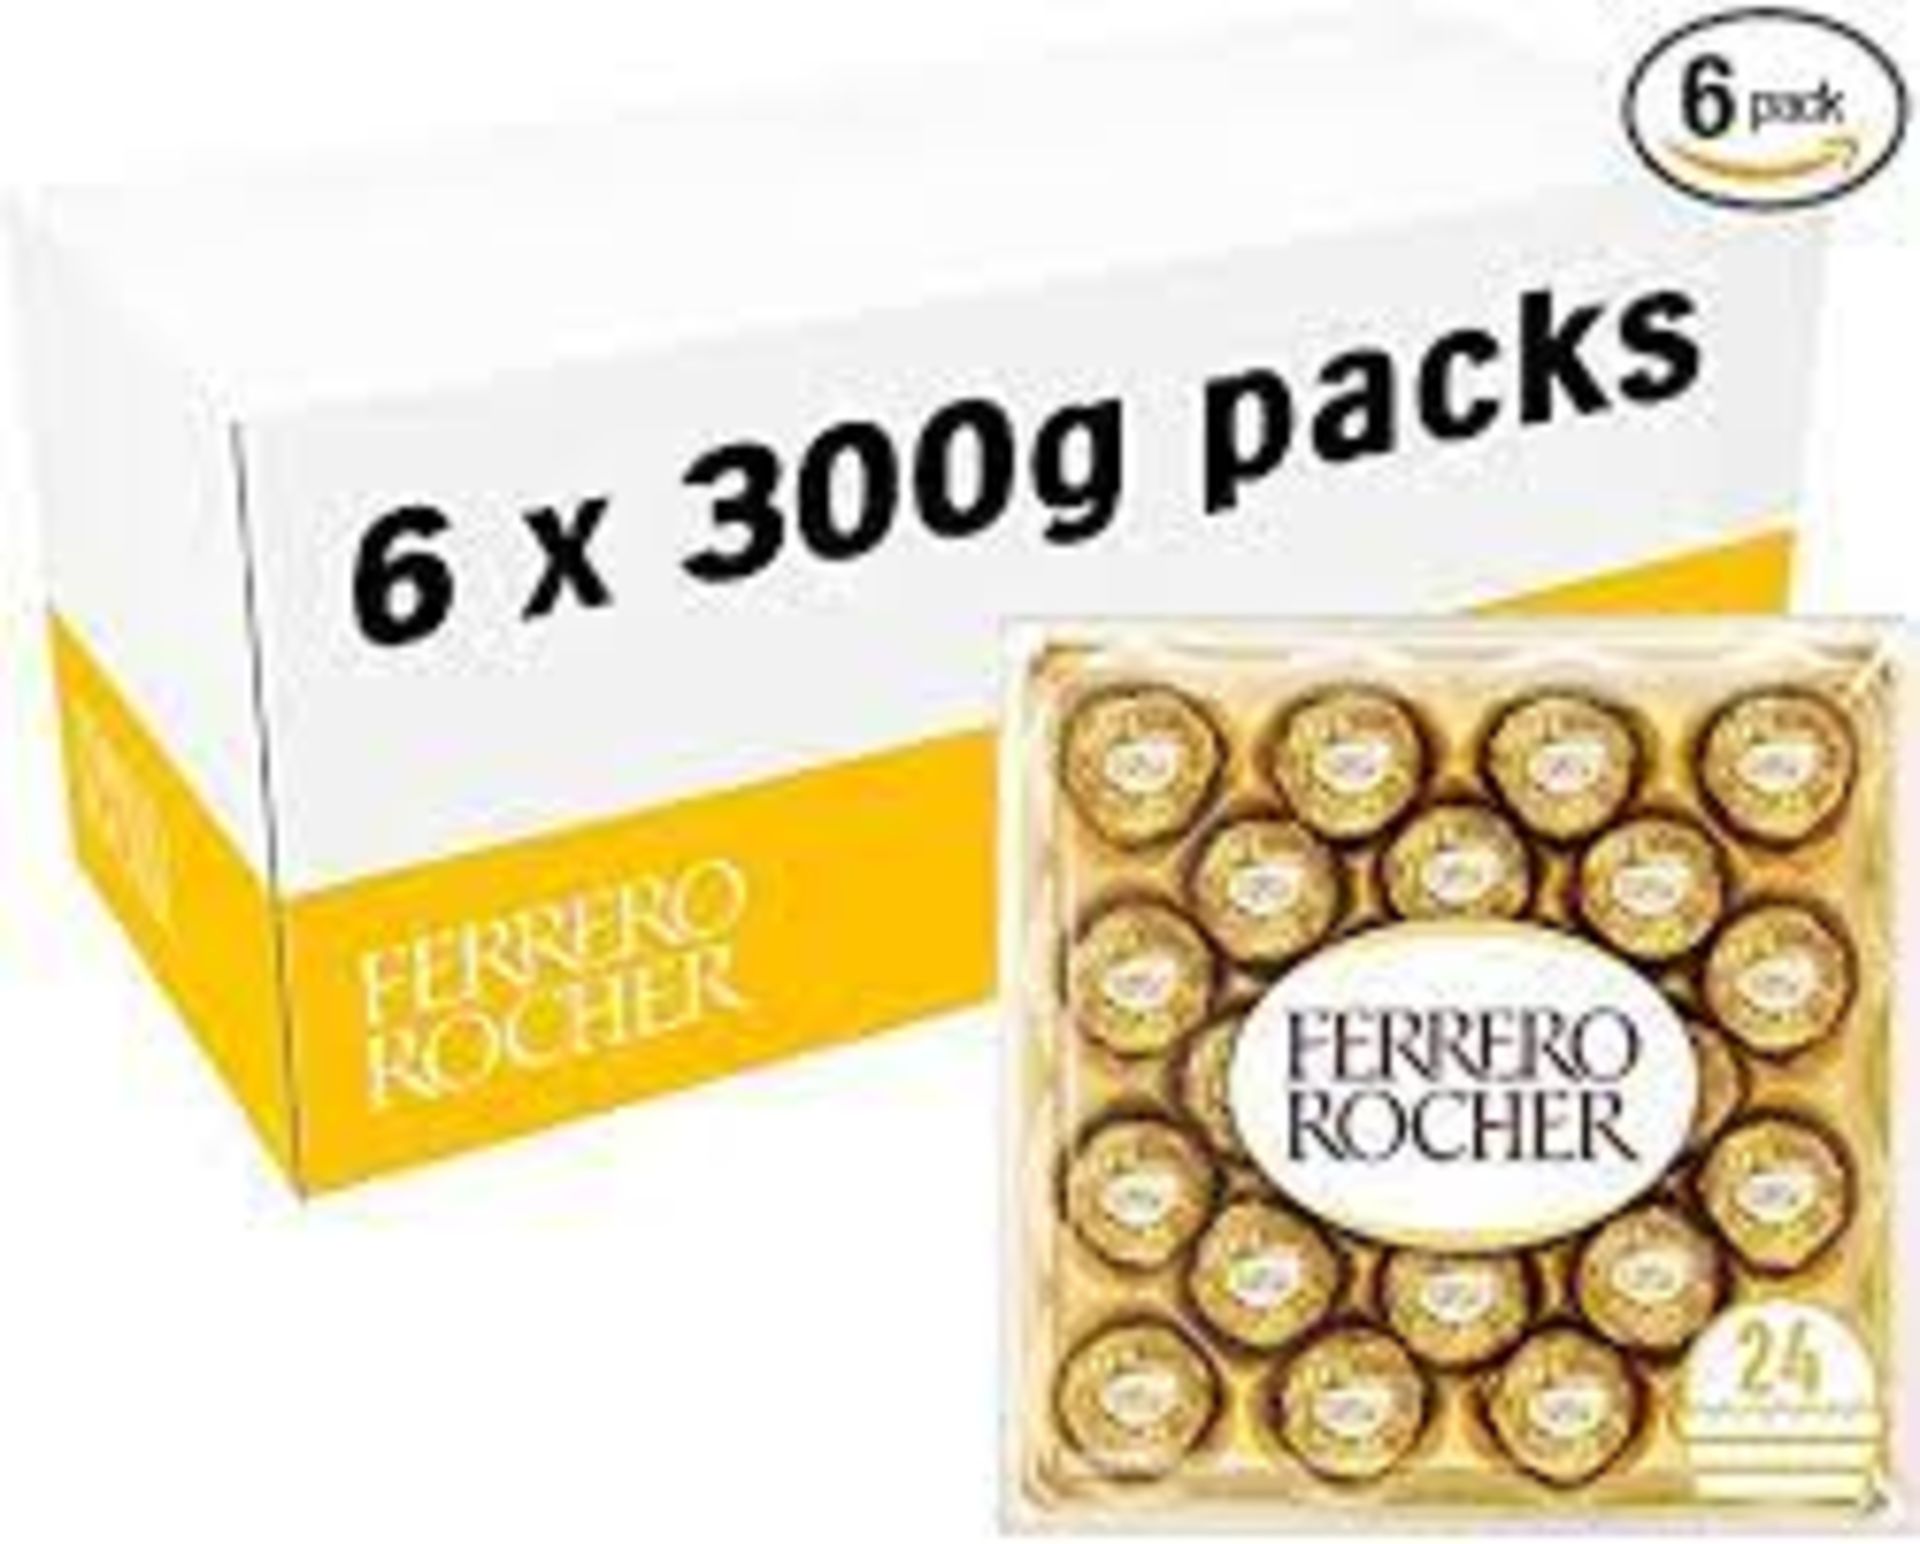 £49.69 BOXED FERRERO ROCHER 6 X 300G